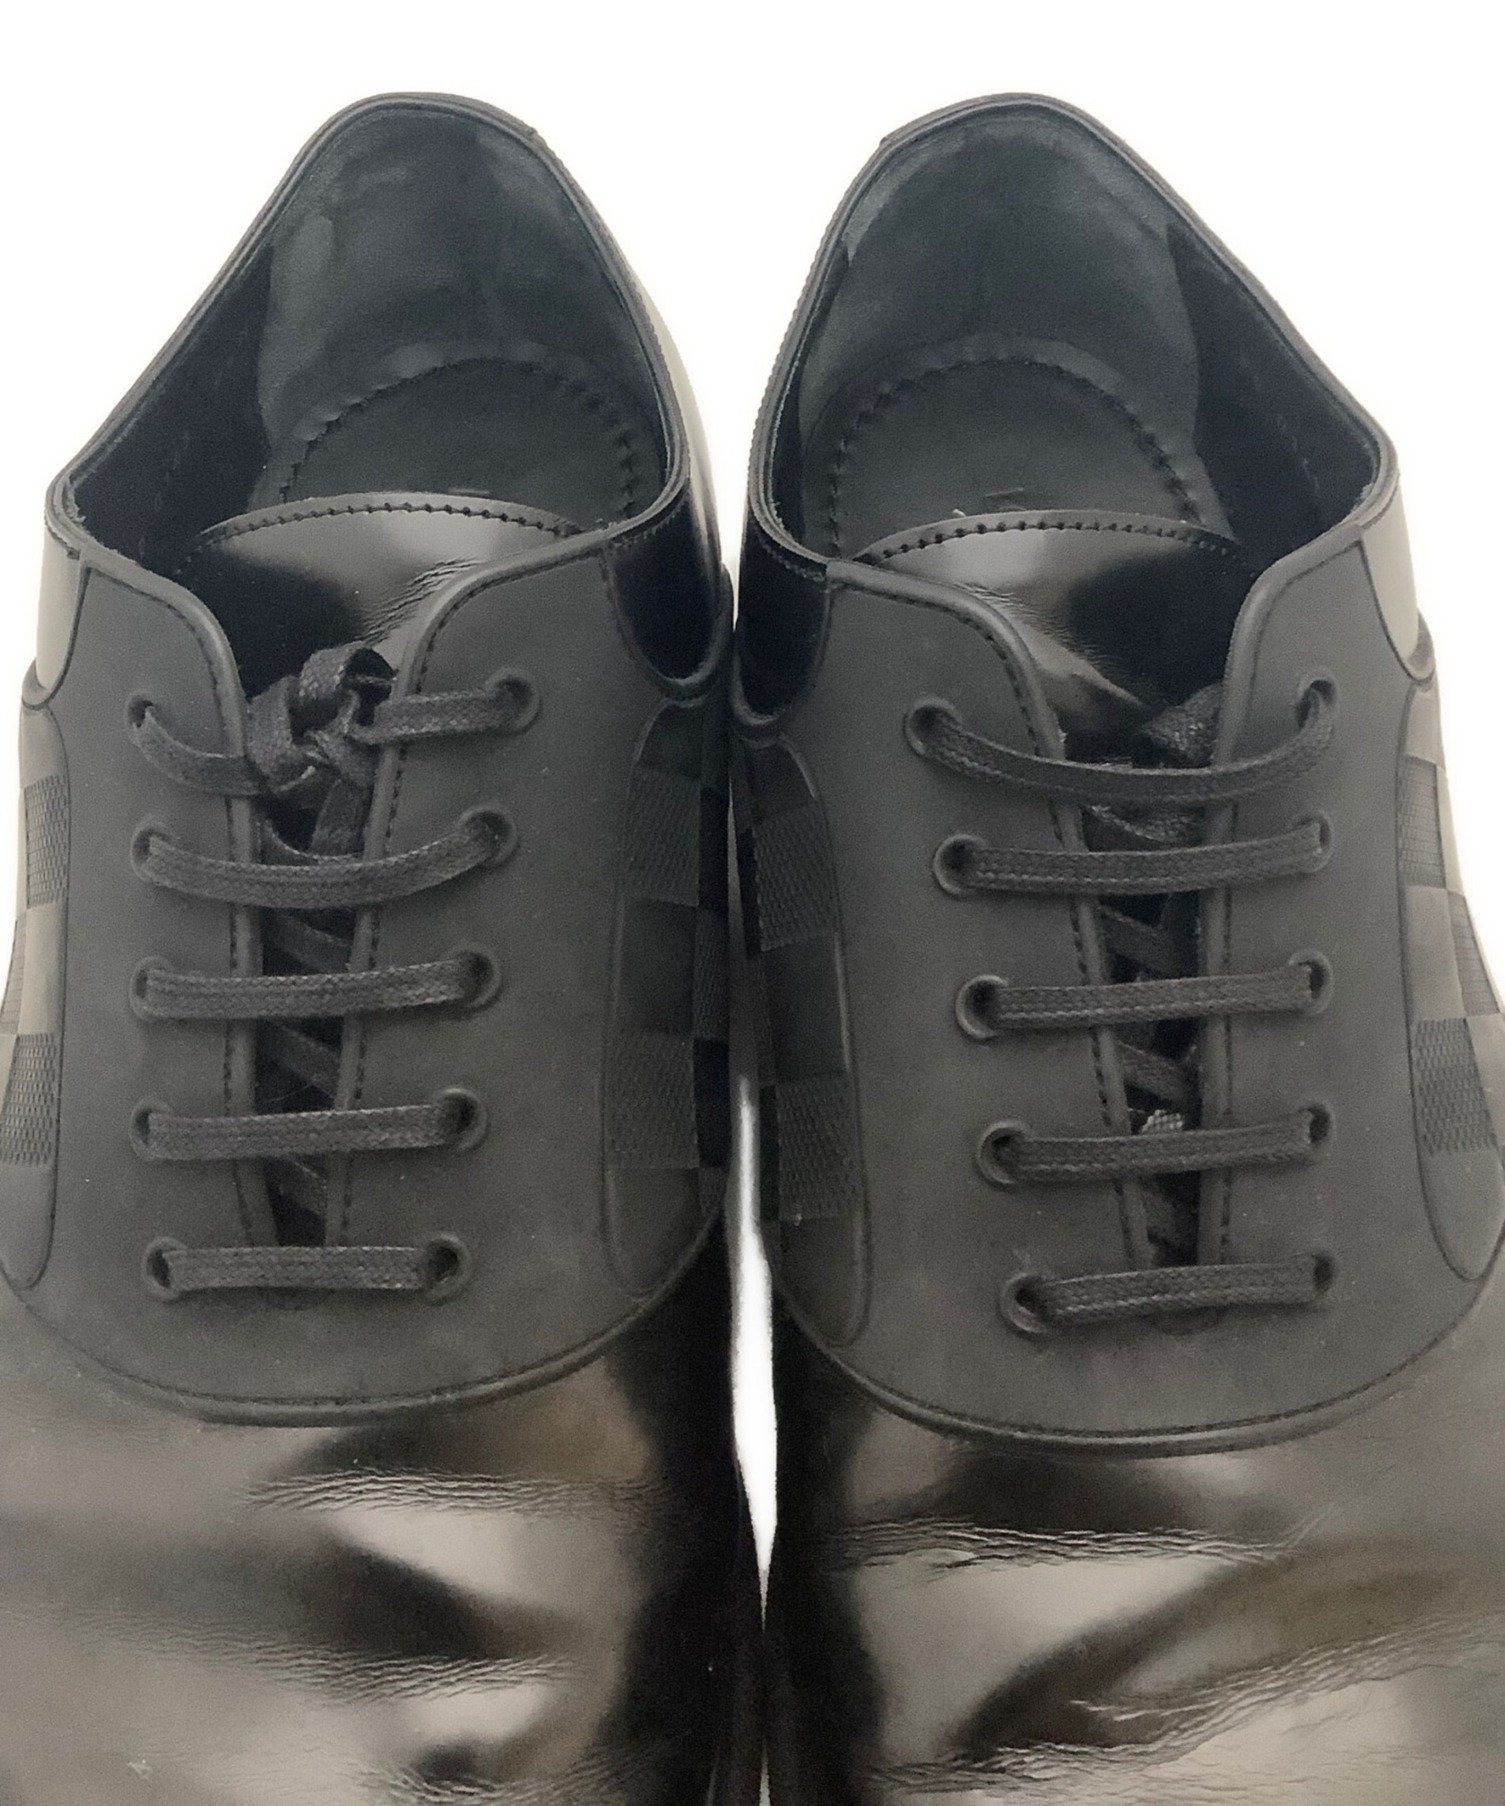 ルイヴィトン LOUIS VUITTON レザーシューズ ダミエ オックスフォード ビジネスシューズ シューズ 革靴 メンズ 9 1/2M(28cm相当) ブラック